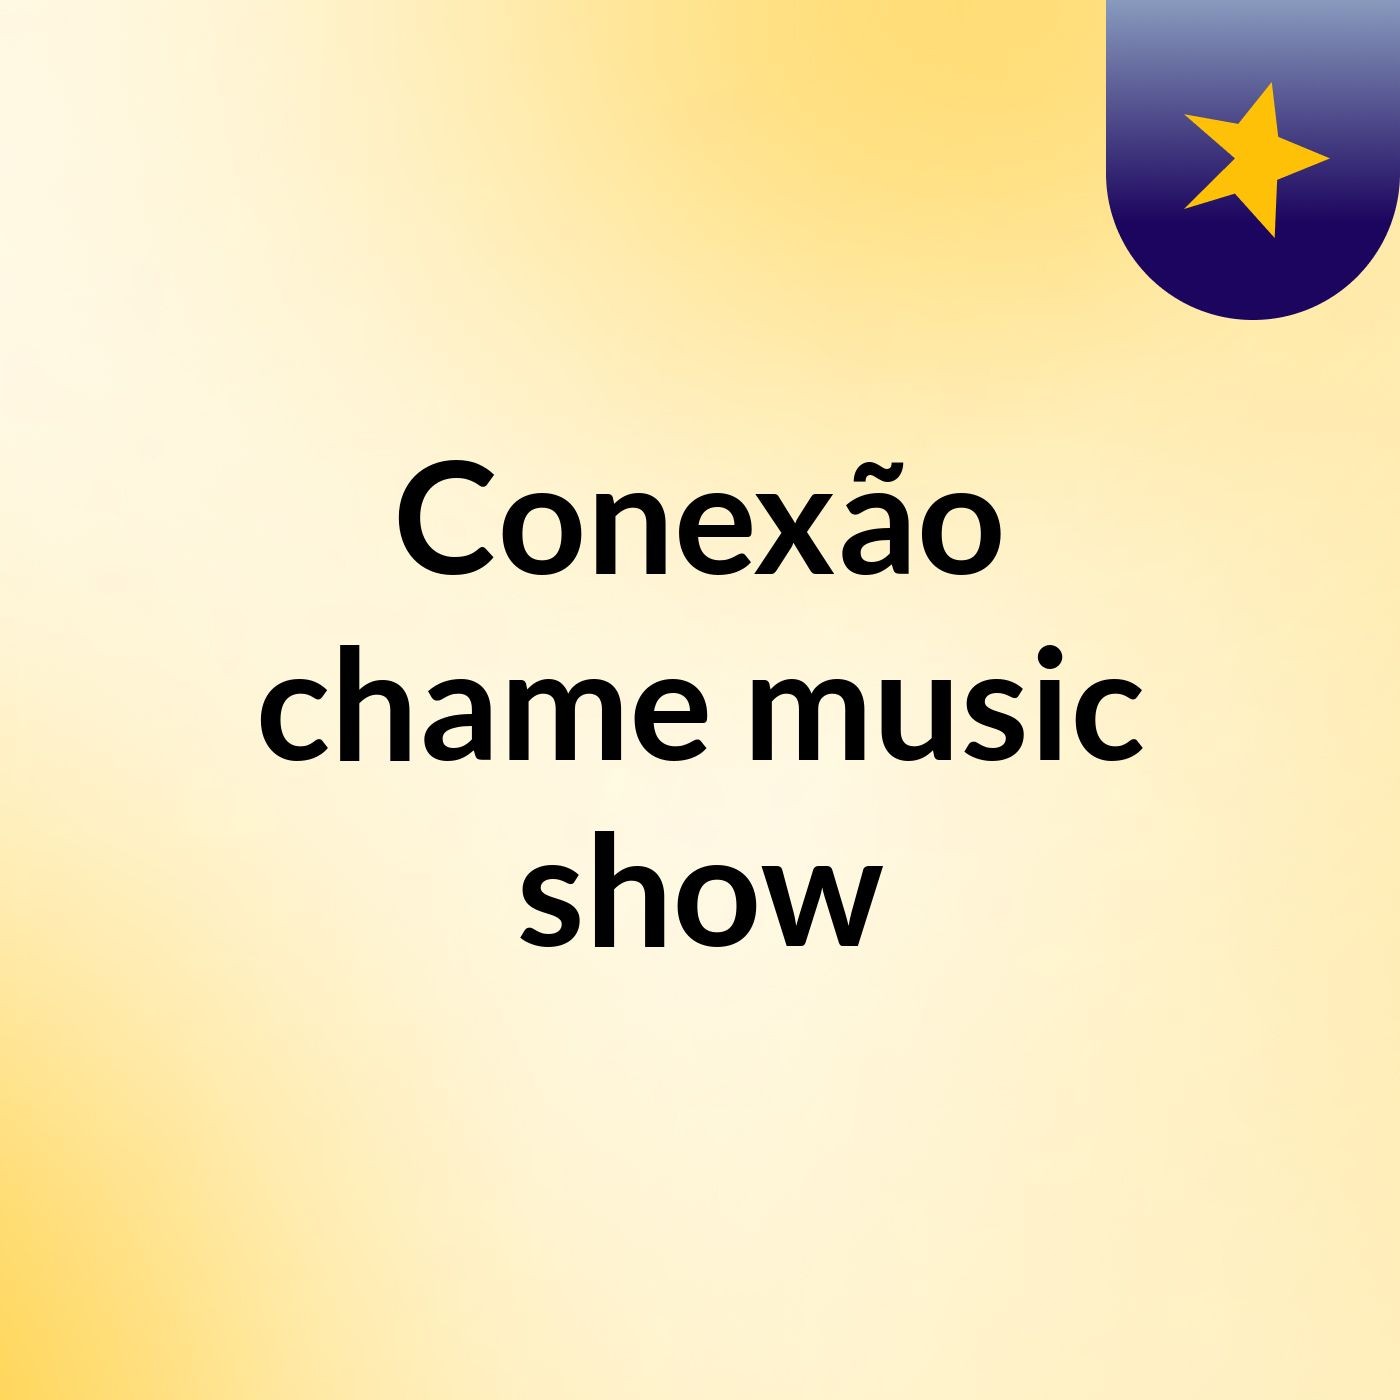 Conexão chame music show